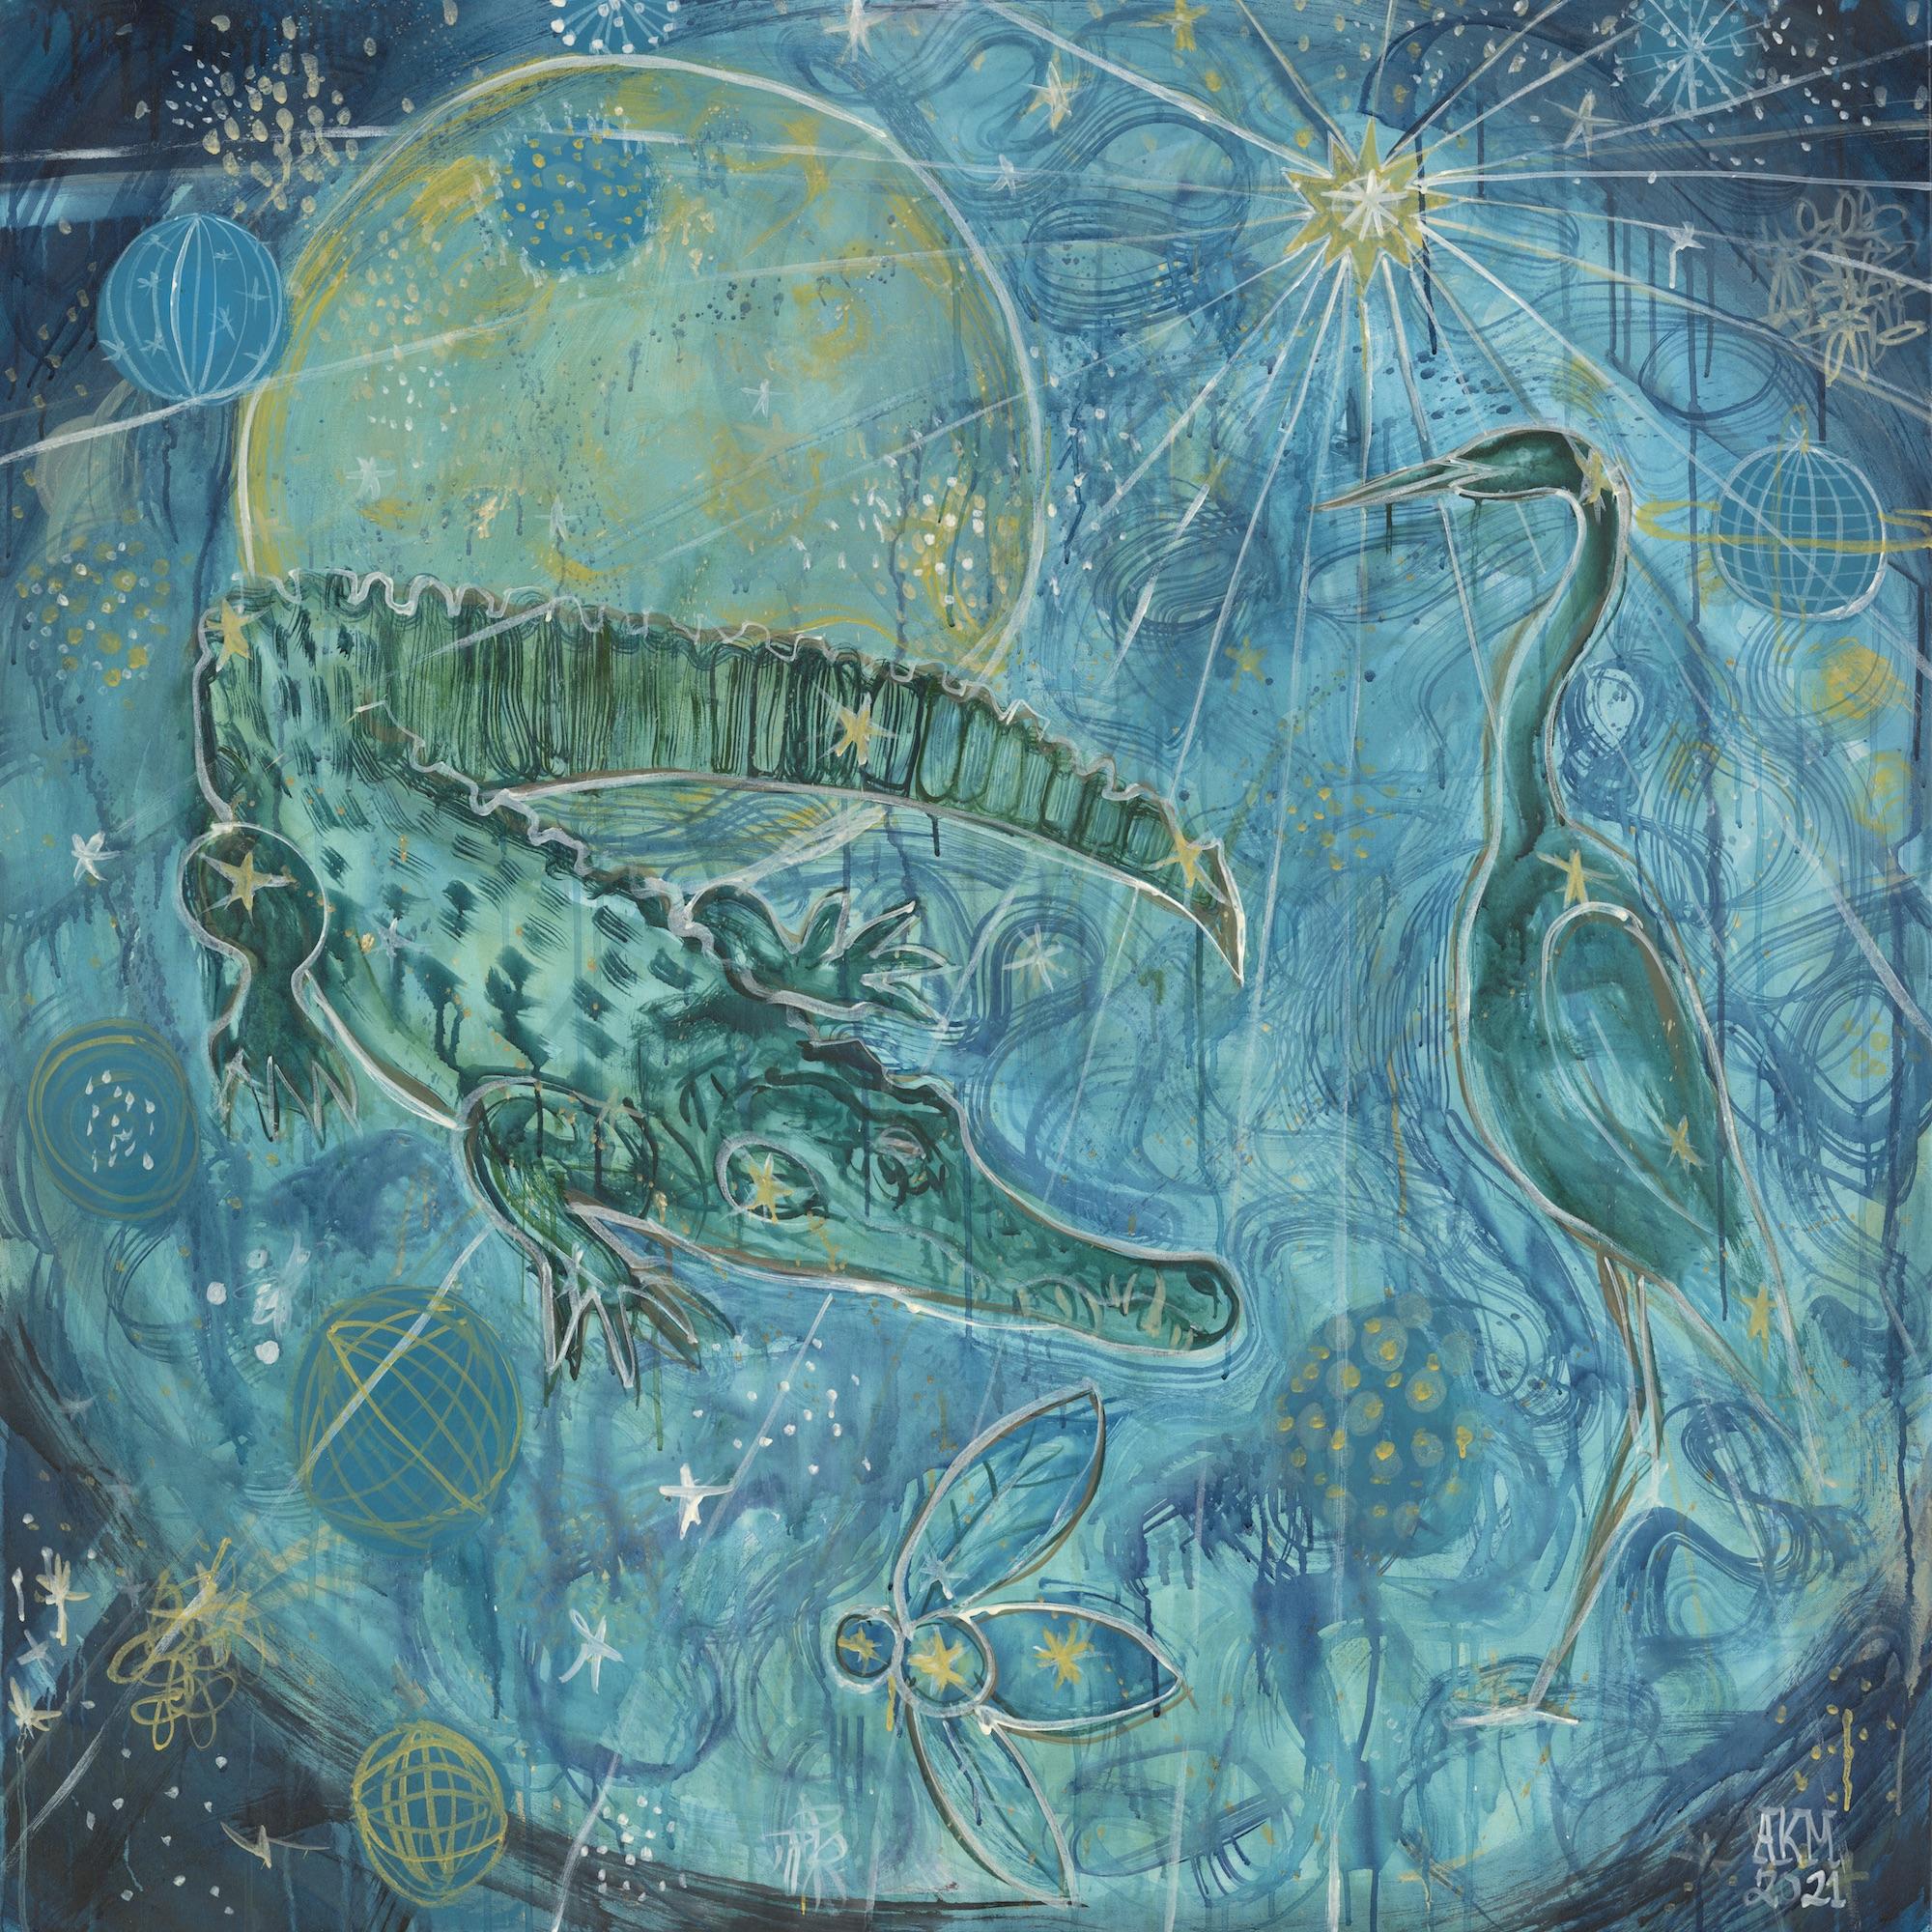 Animal Painting Alex K. Mason - Grande peinture céleste Mixed Media sur toile,  Bleus, verts, blancs, jaunes